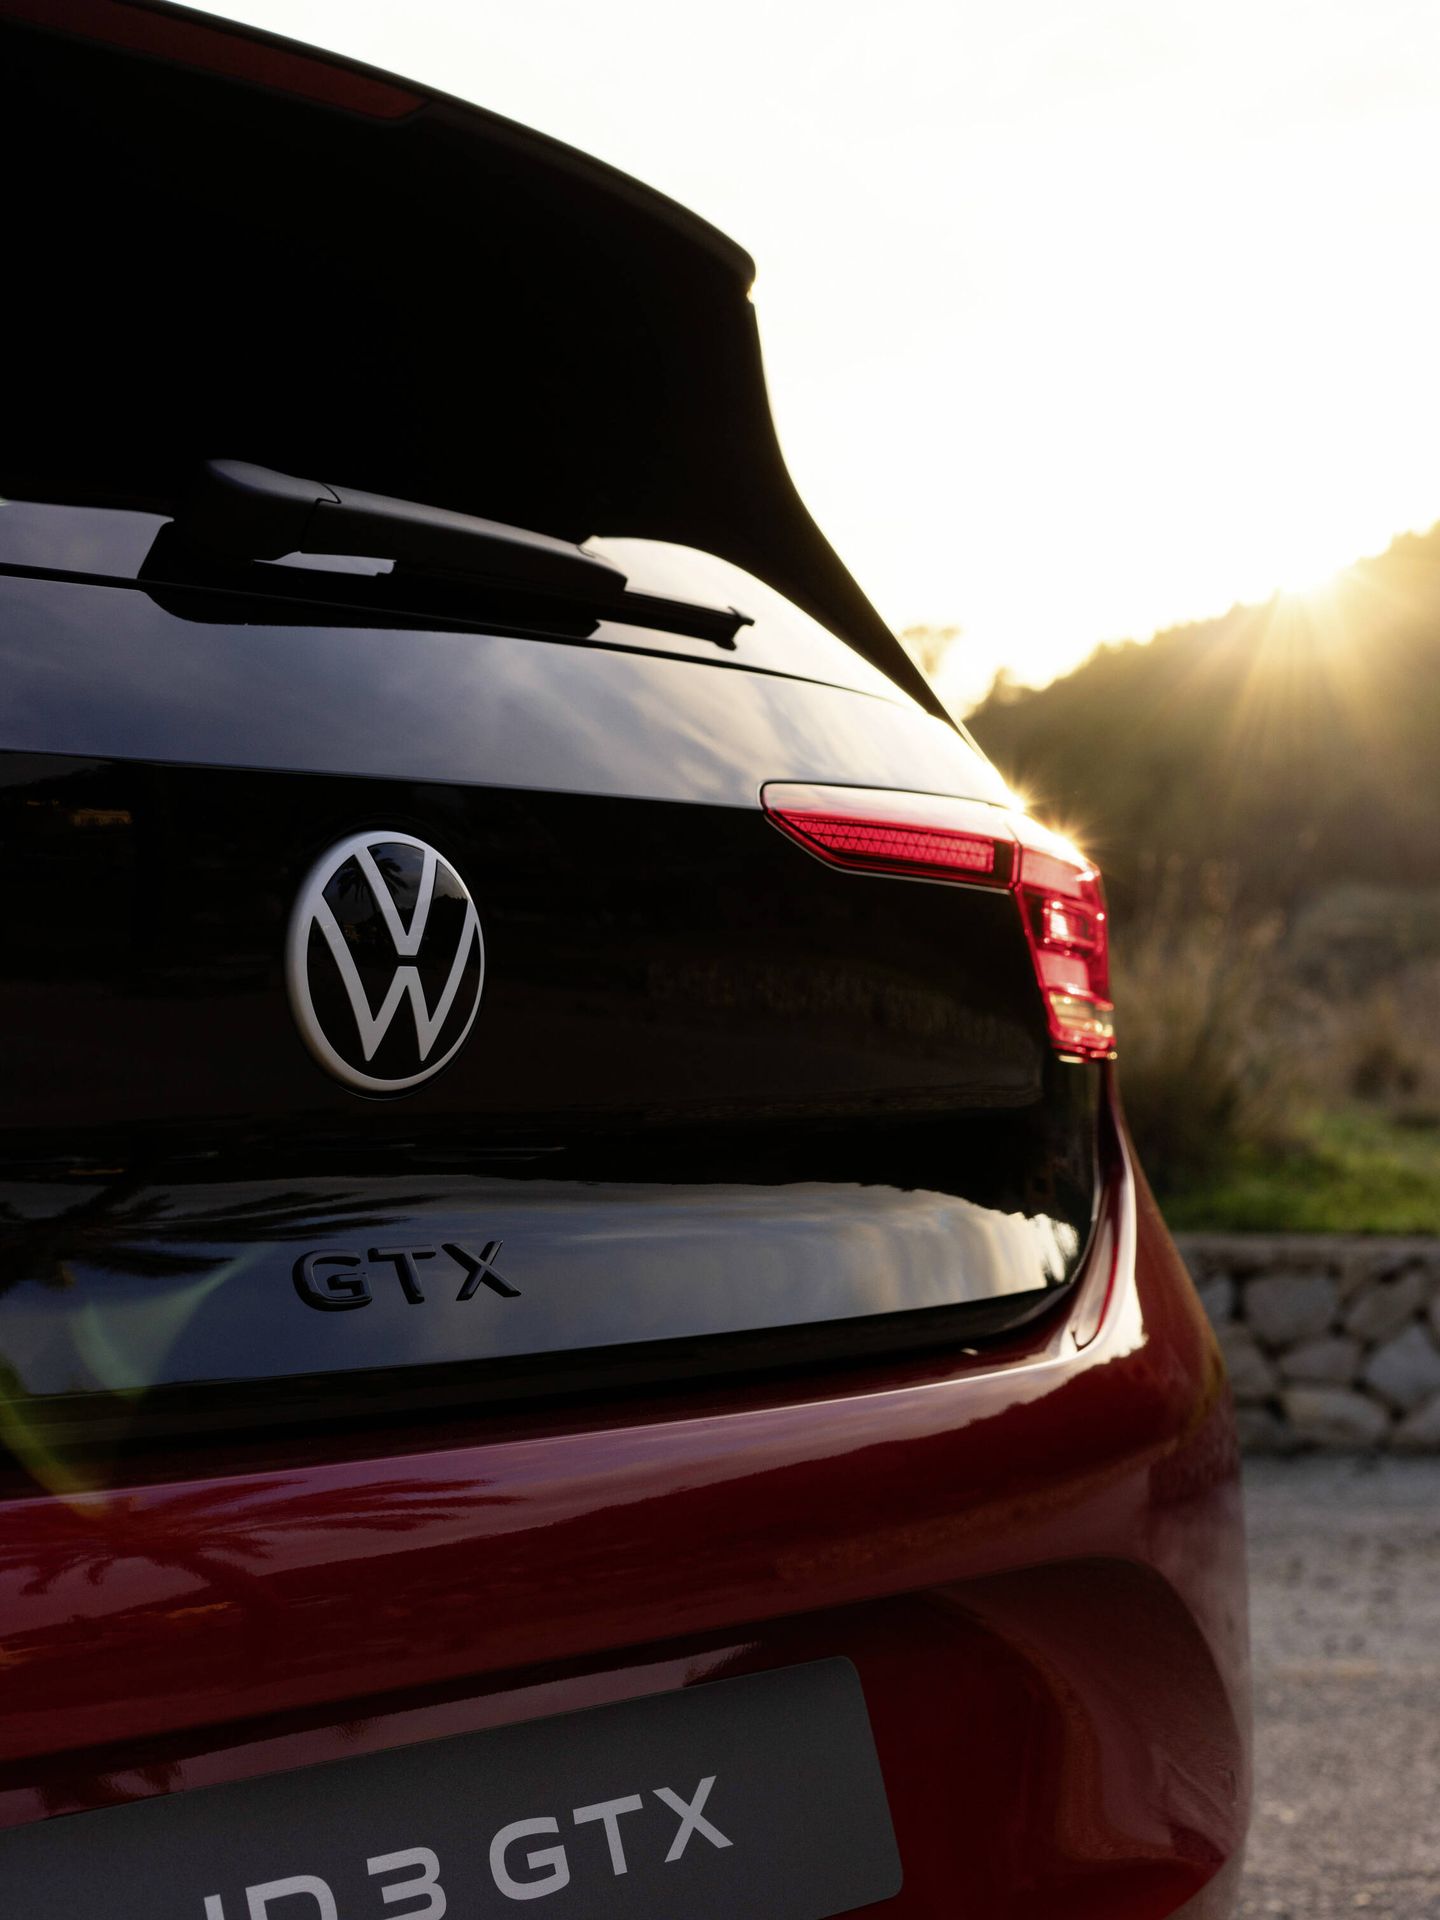 Vista posterior del nuevo Volkswagen ID.3 GTX.